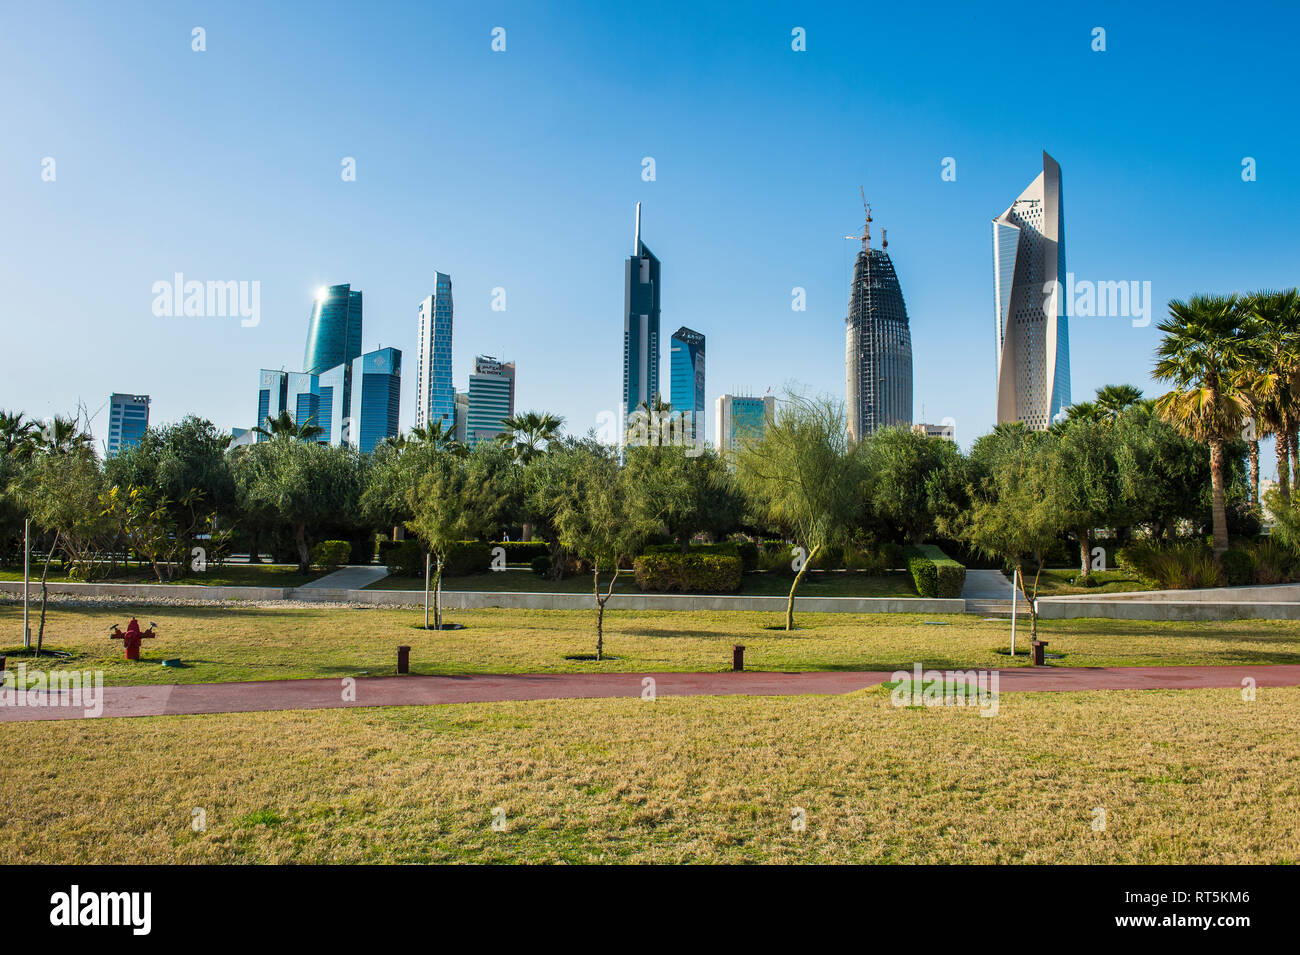 Arabia, Kuwait, Kuwait city and Al Shaheed Park Stock Photo